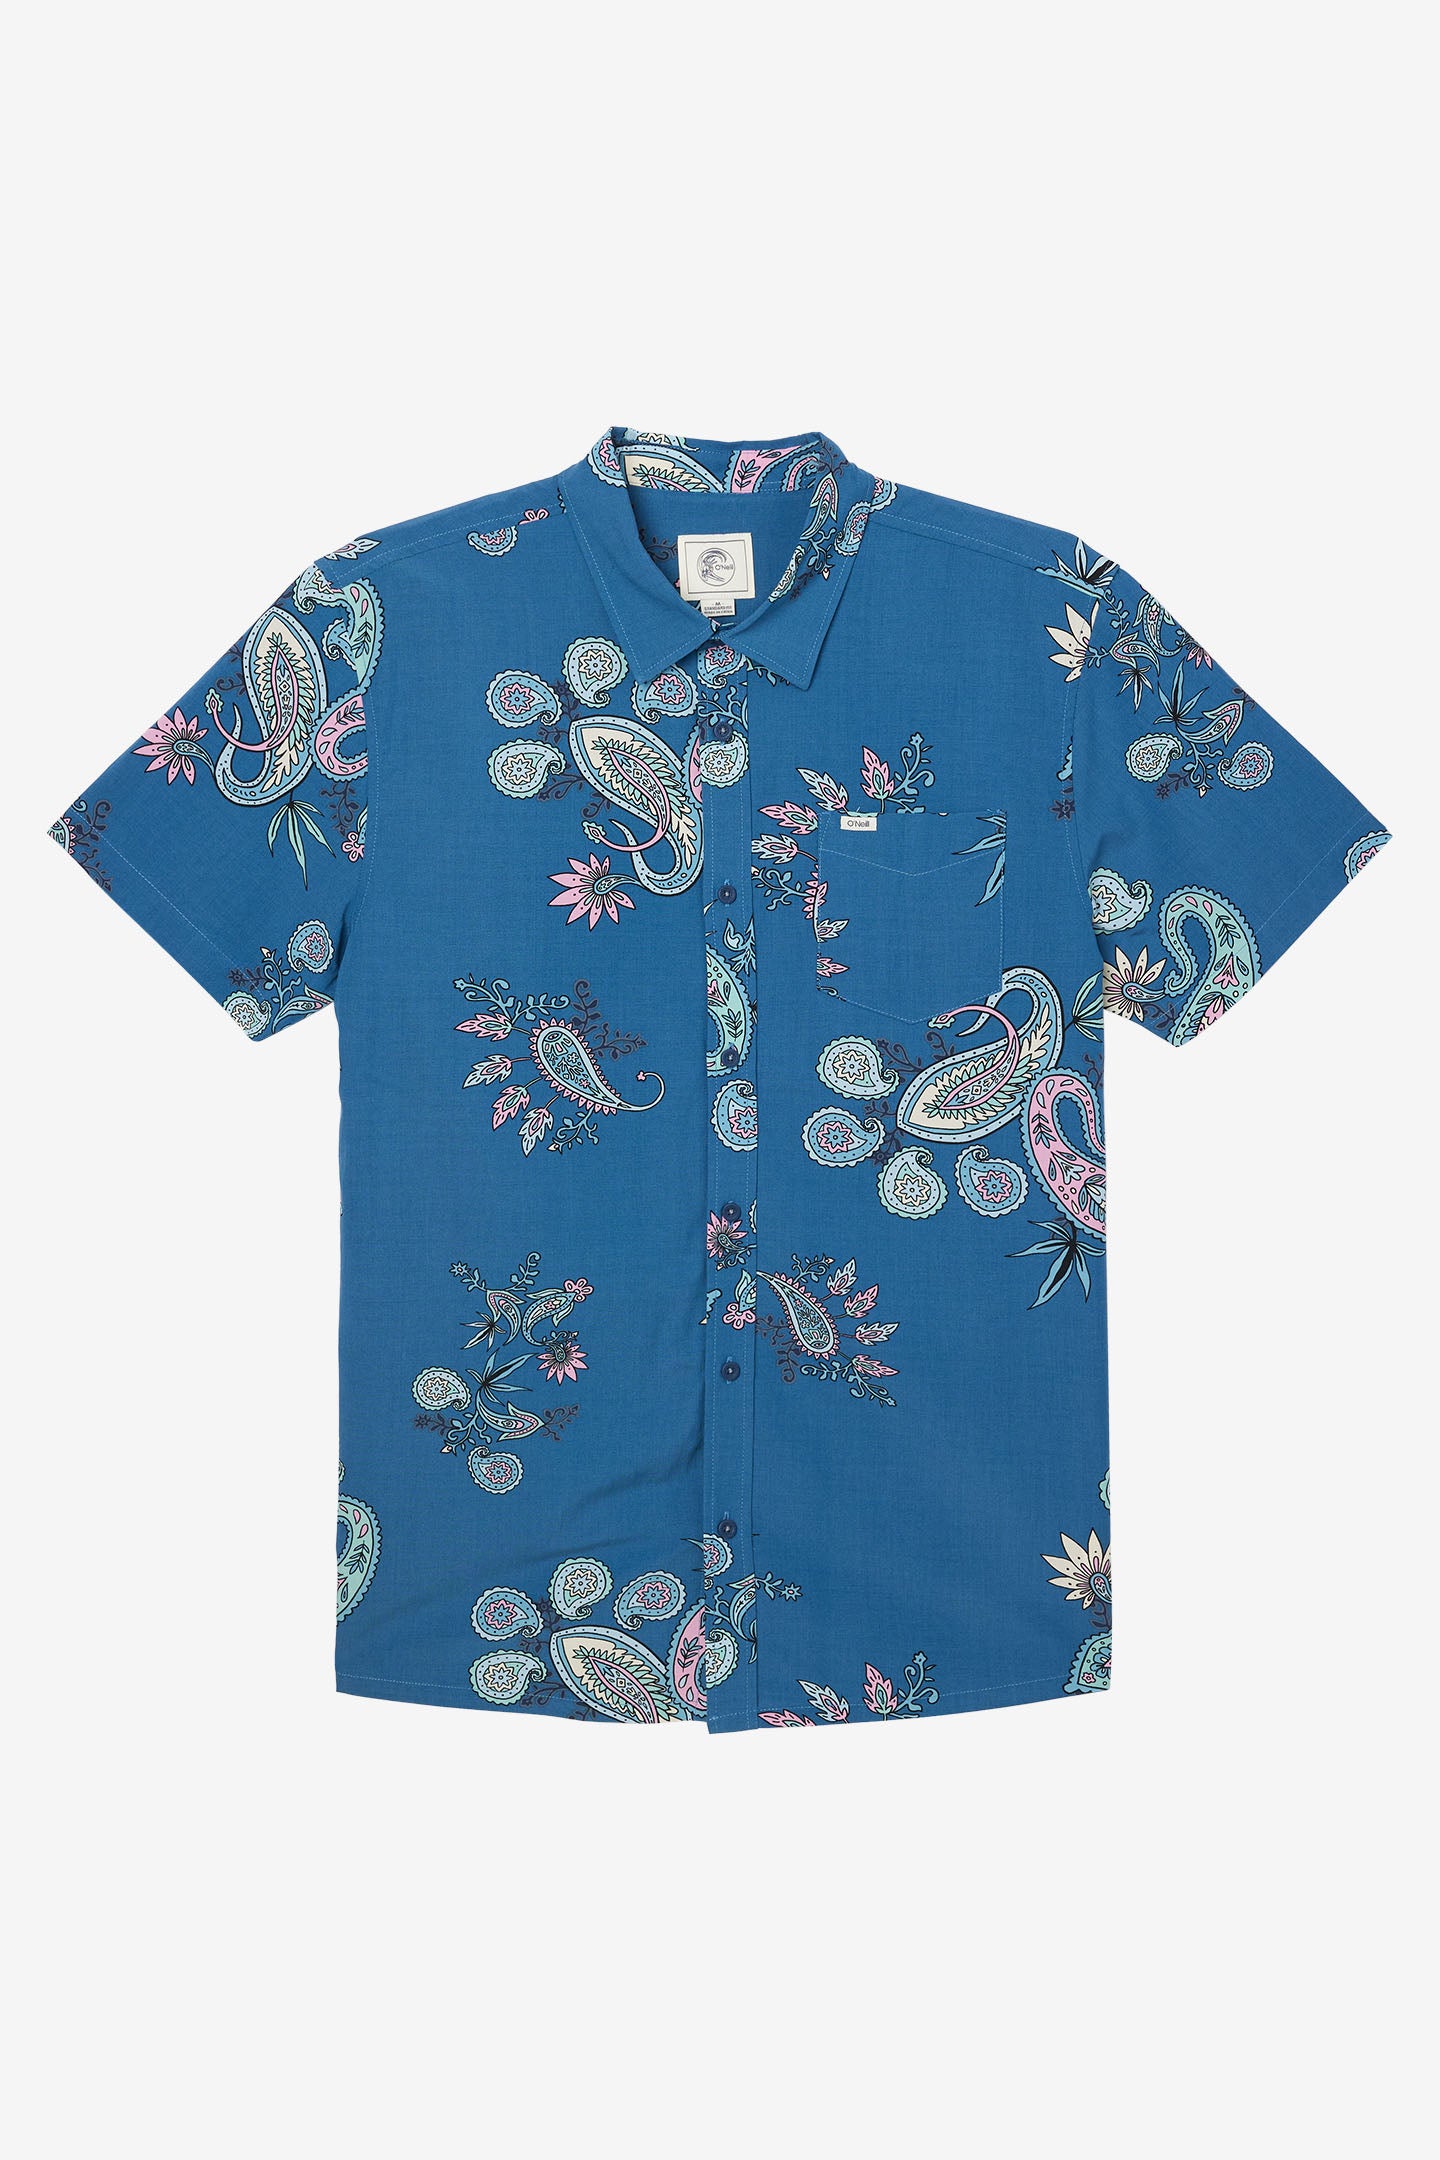 O'Riginals Eco Standard Fit Shirt - Indigo | O'Neill